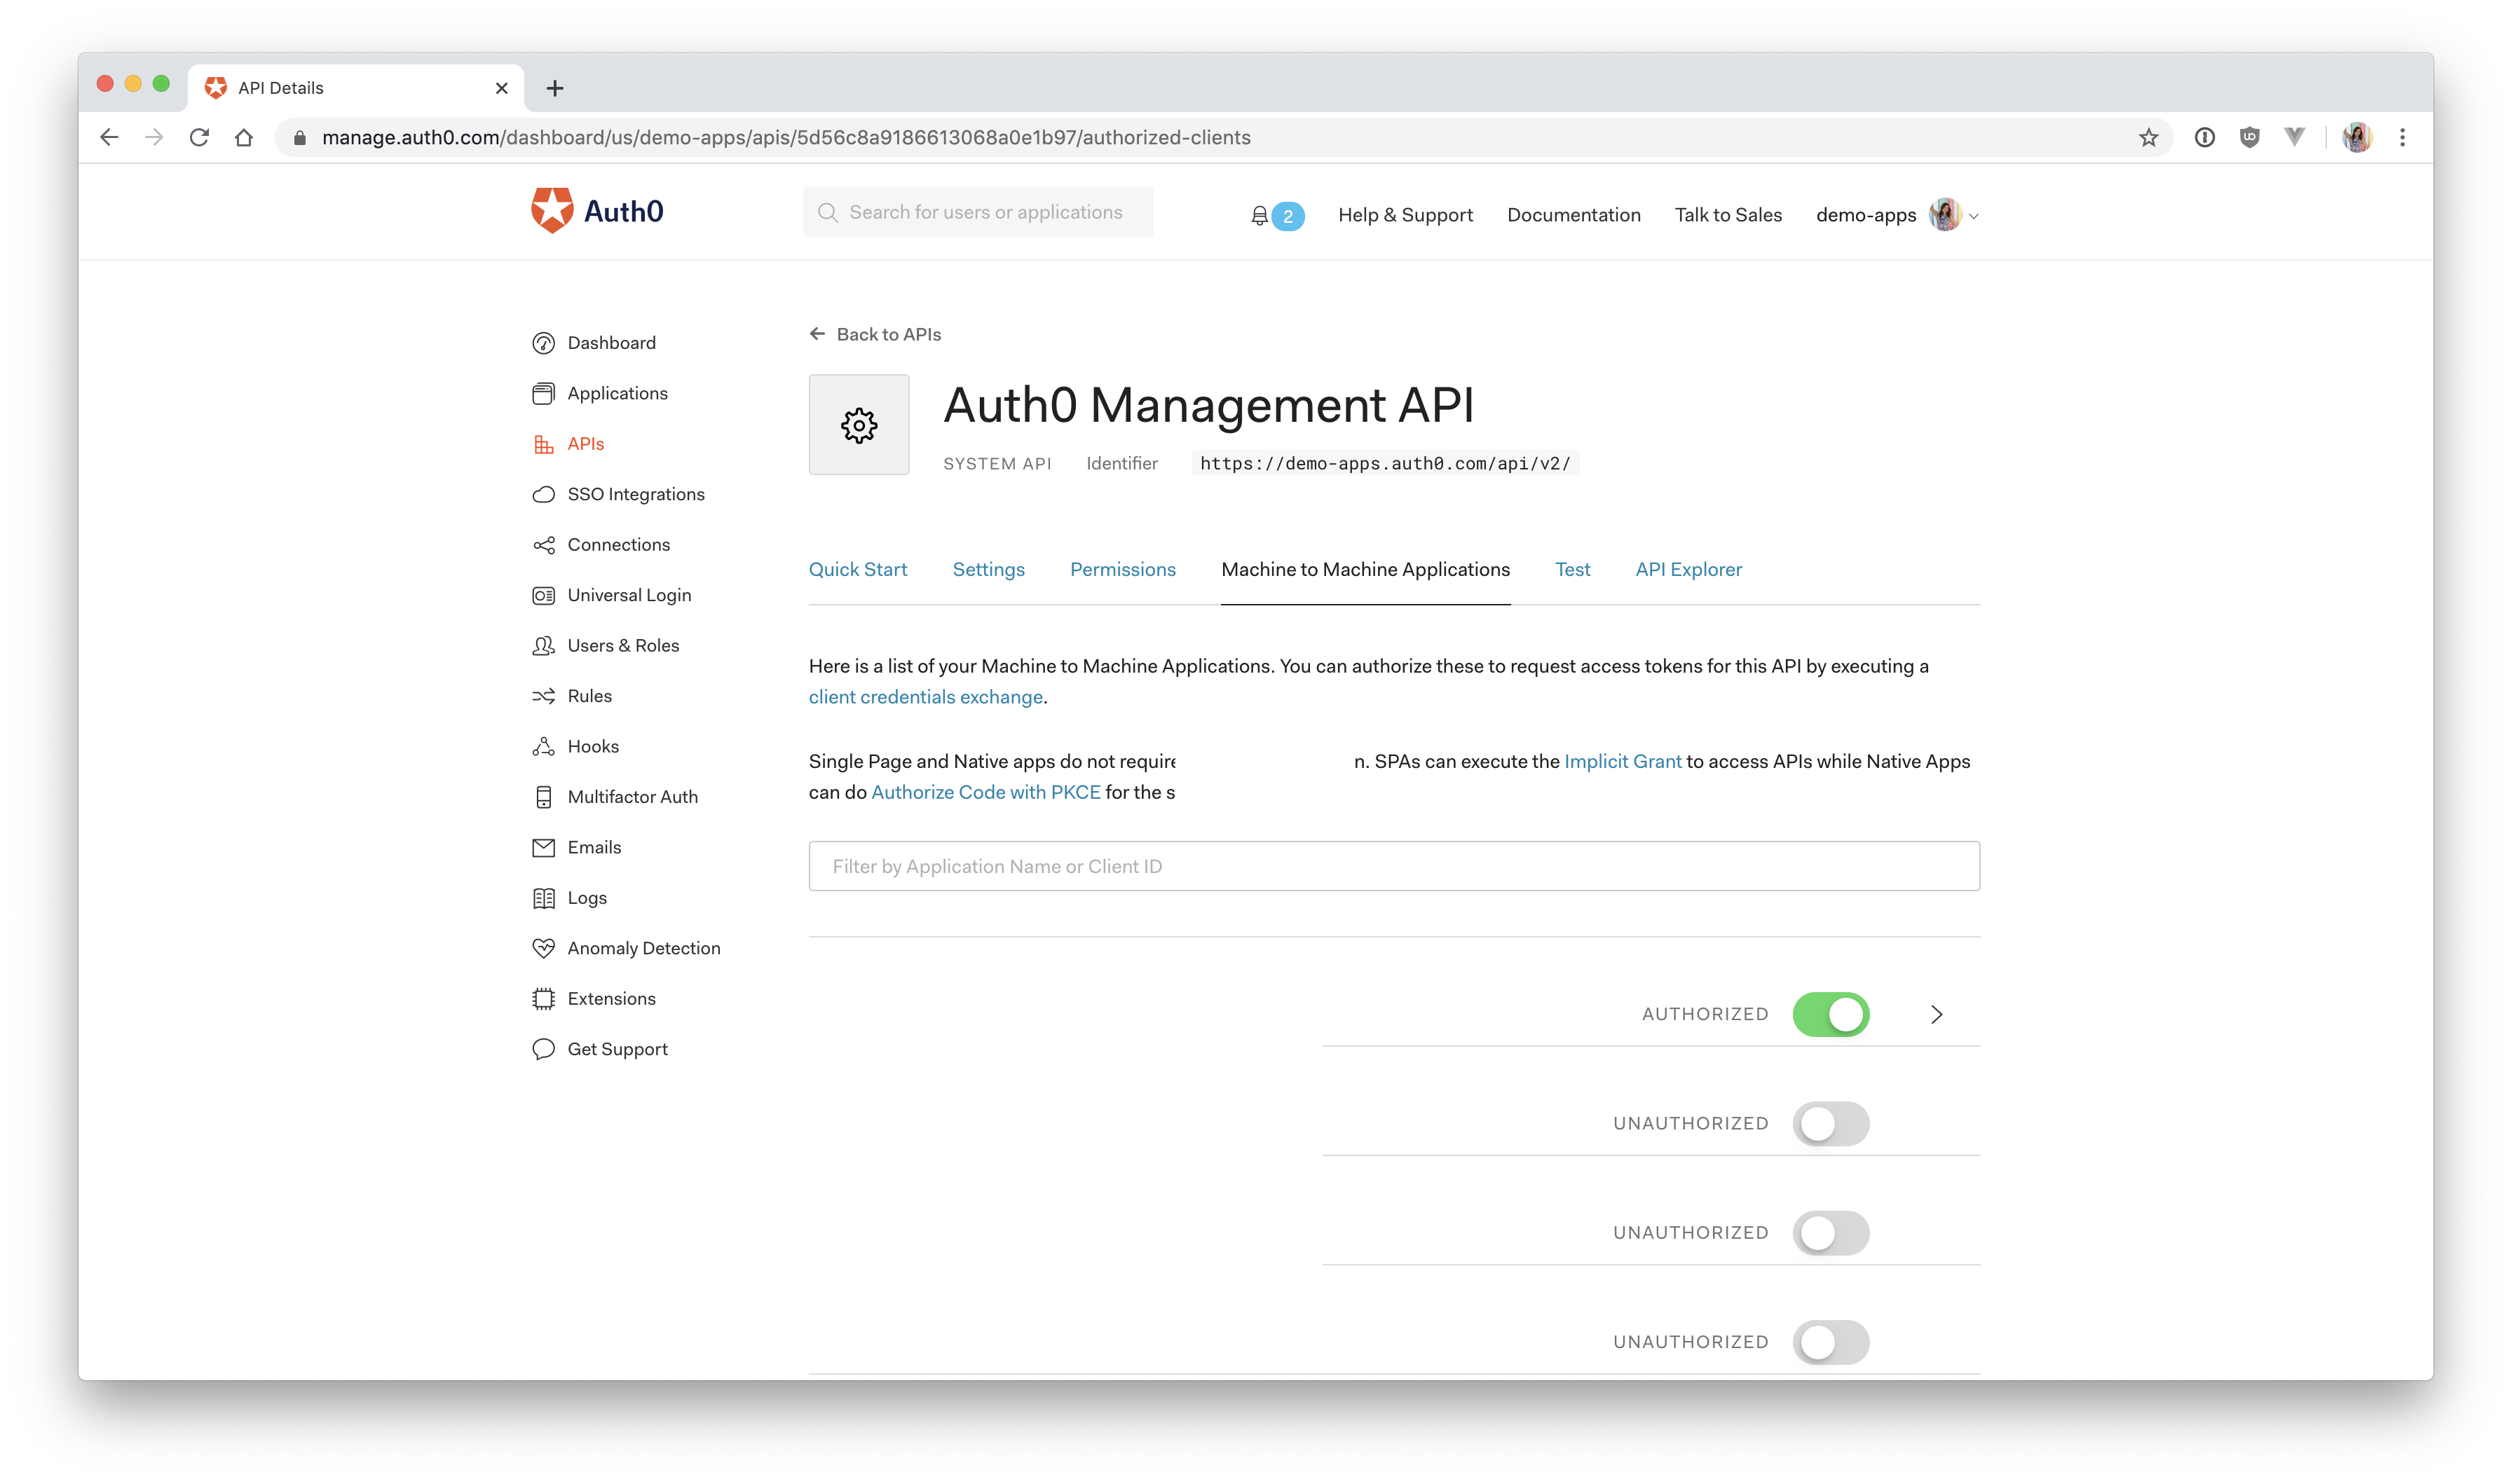 Auth0 Management API authorized client